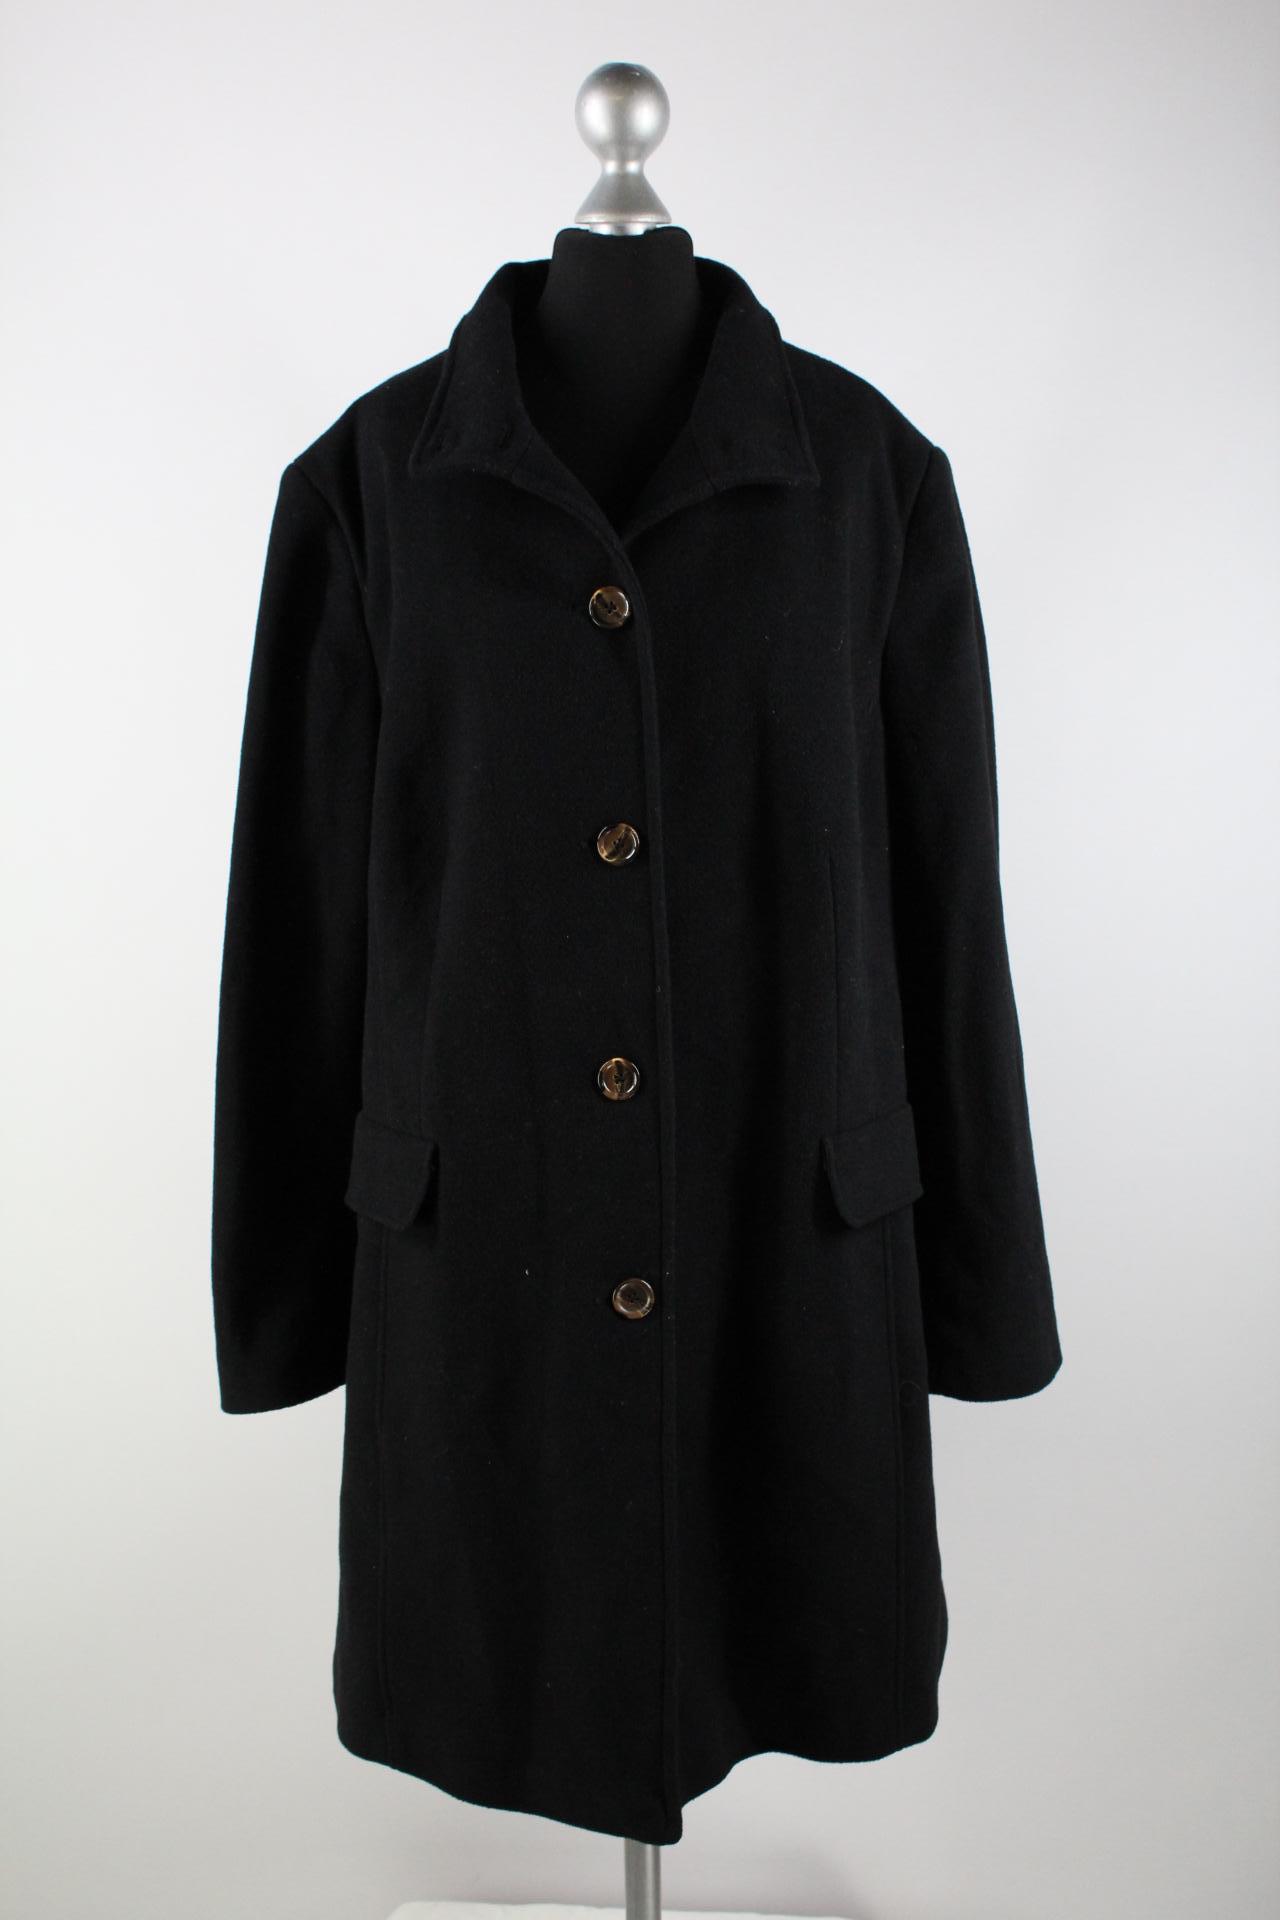 Emanuele Vittoriano Damen-Mantel schwarz Größe 48